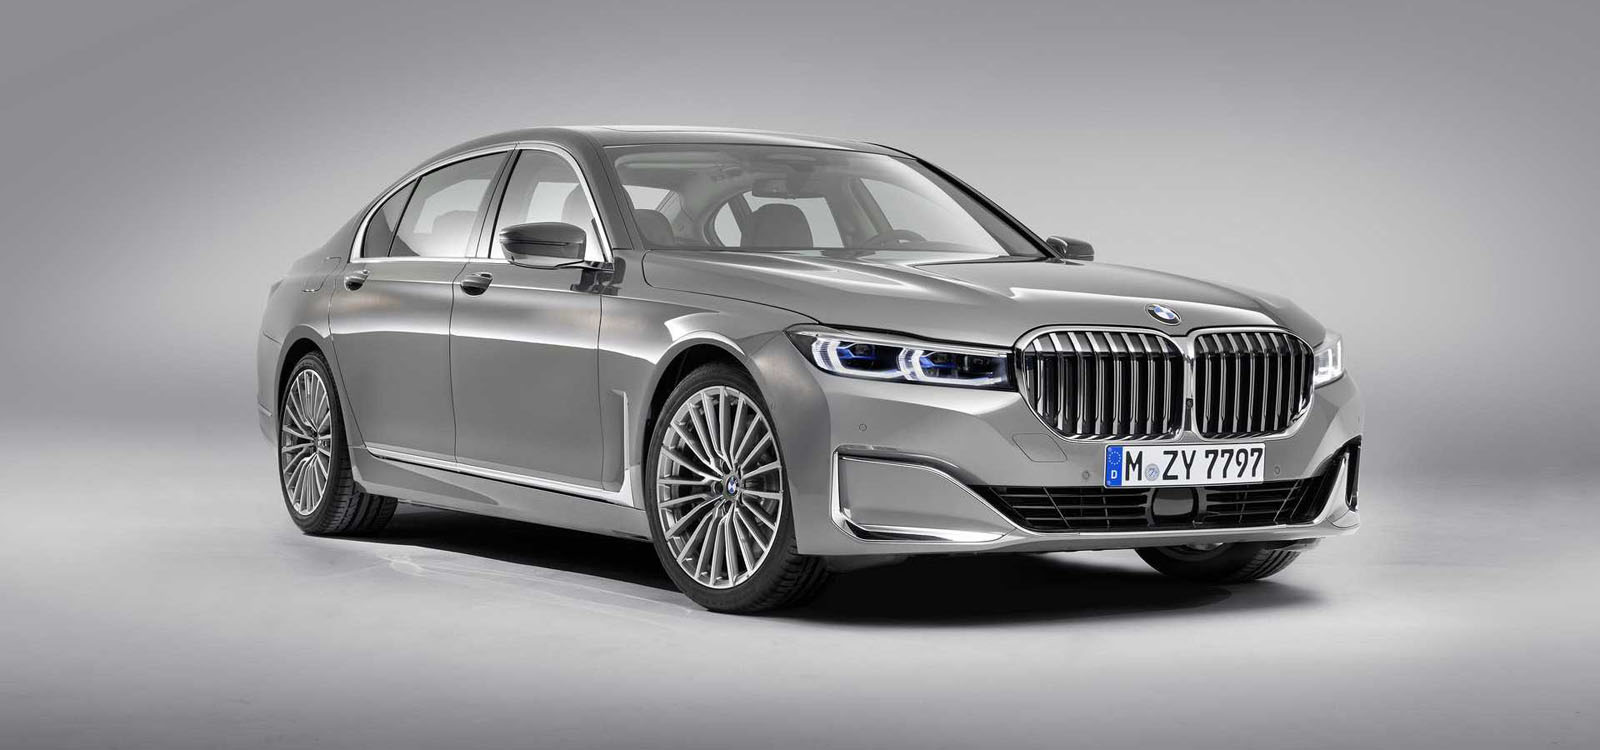 BMW 7 Series thế hệ mới sẽ có thêm bản chạy điện hoàn toàn - 3